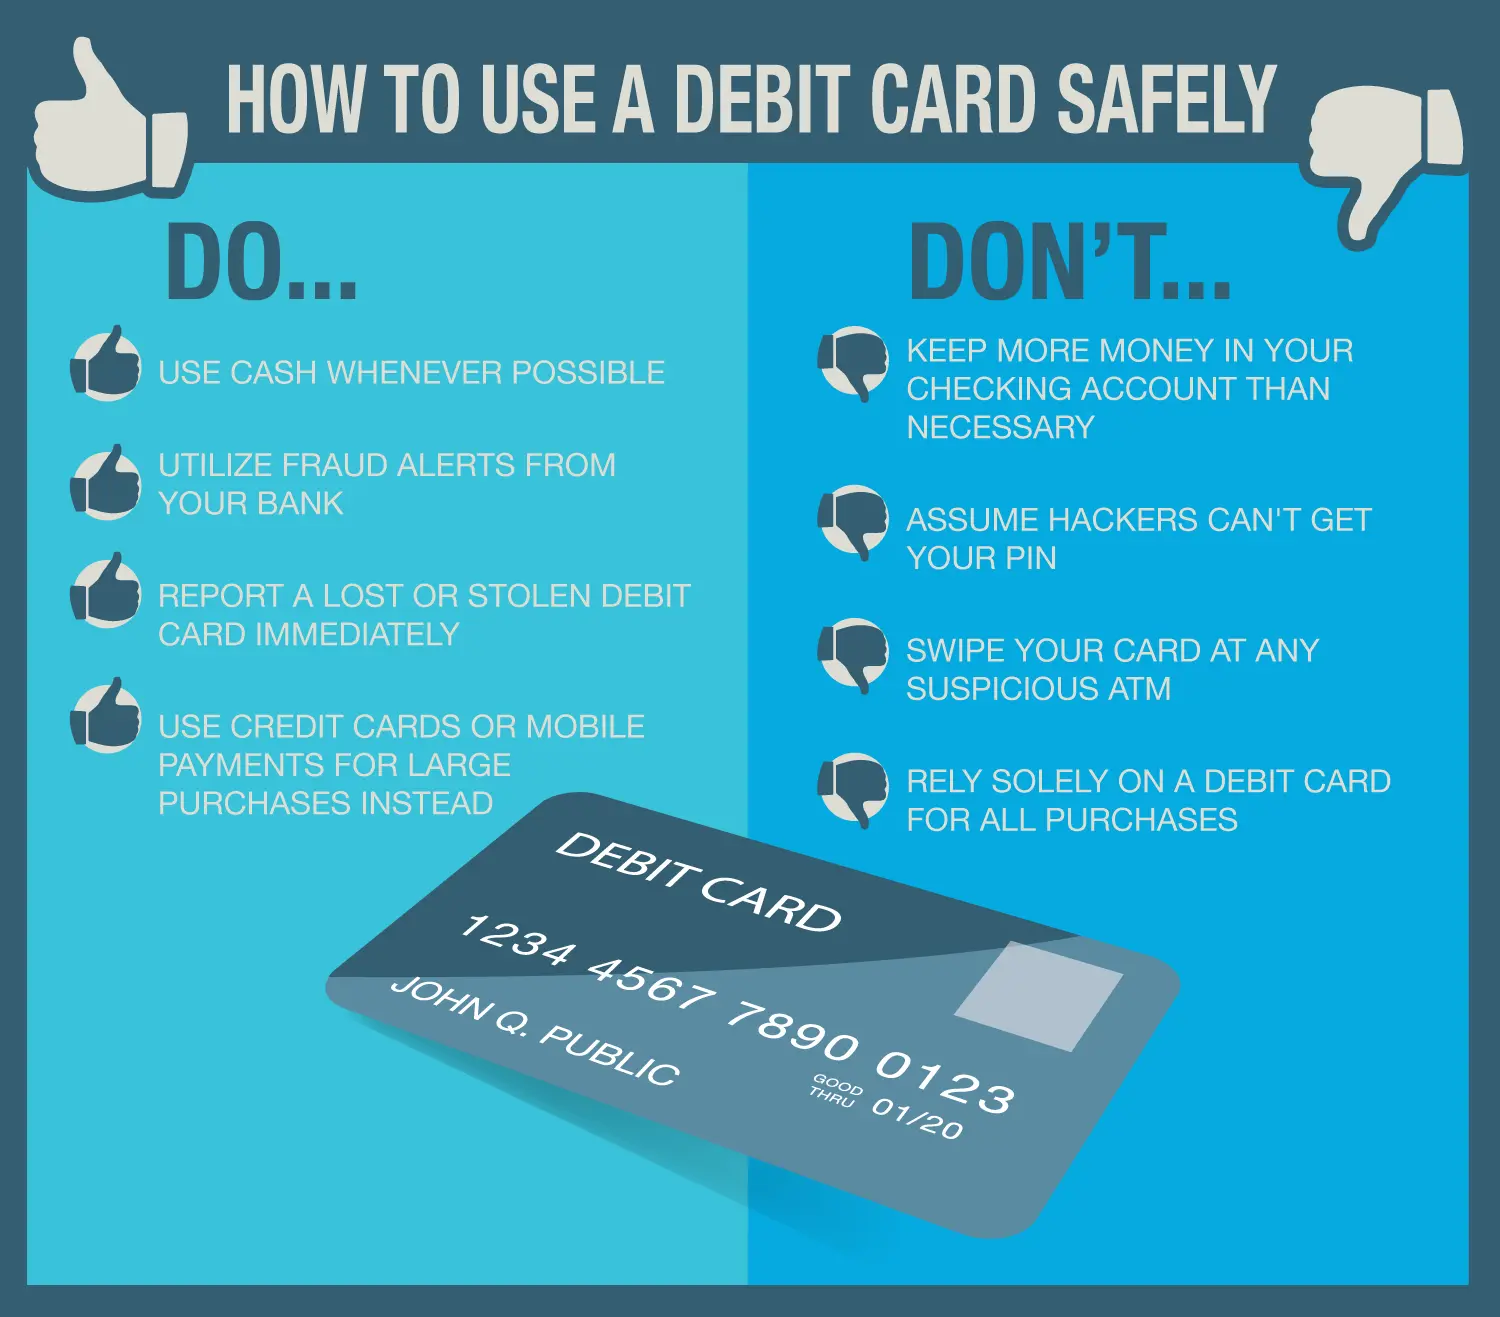 Devo manter meu cartão de débito na minha carteira?